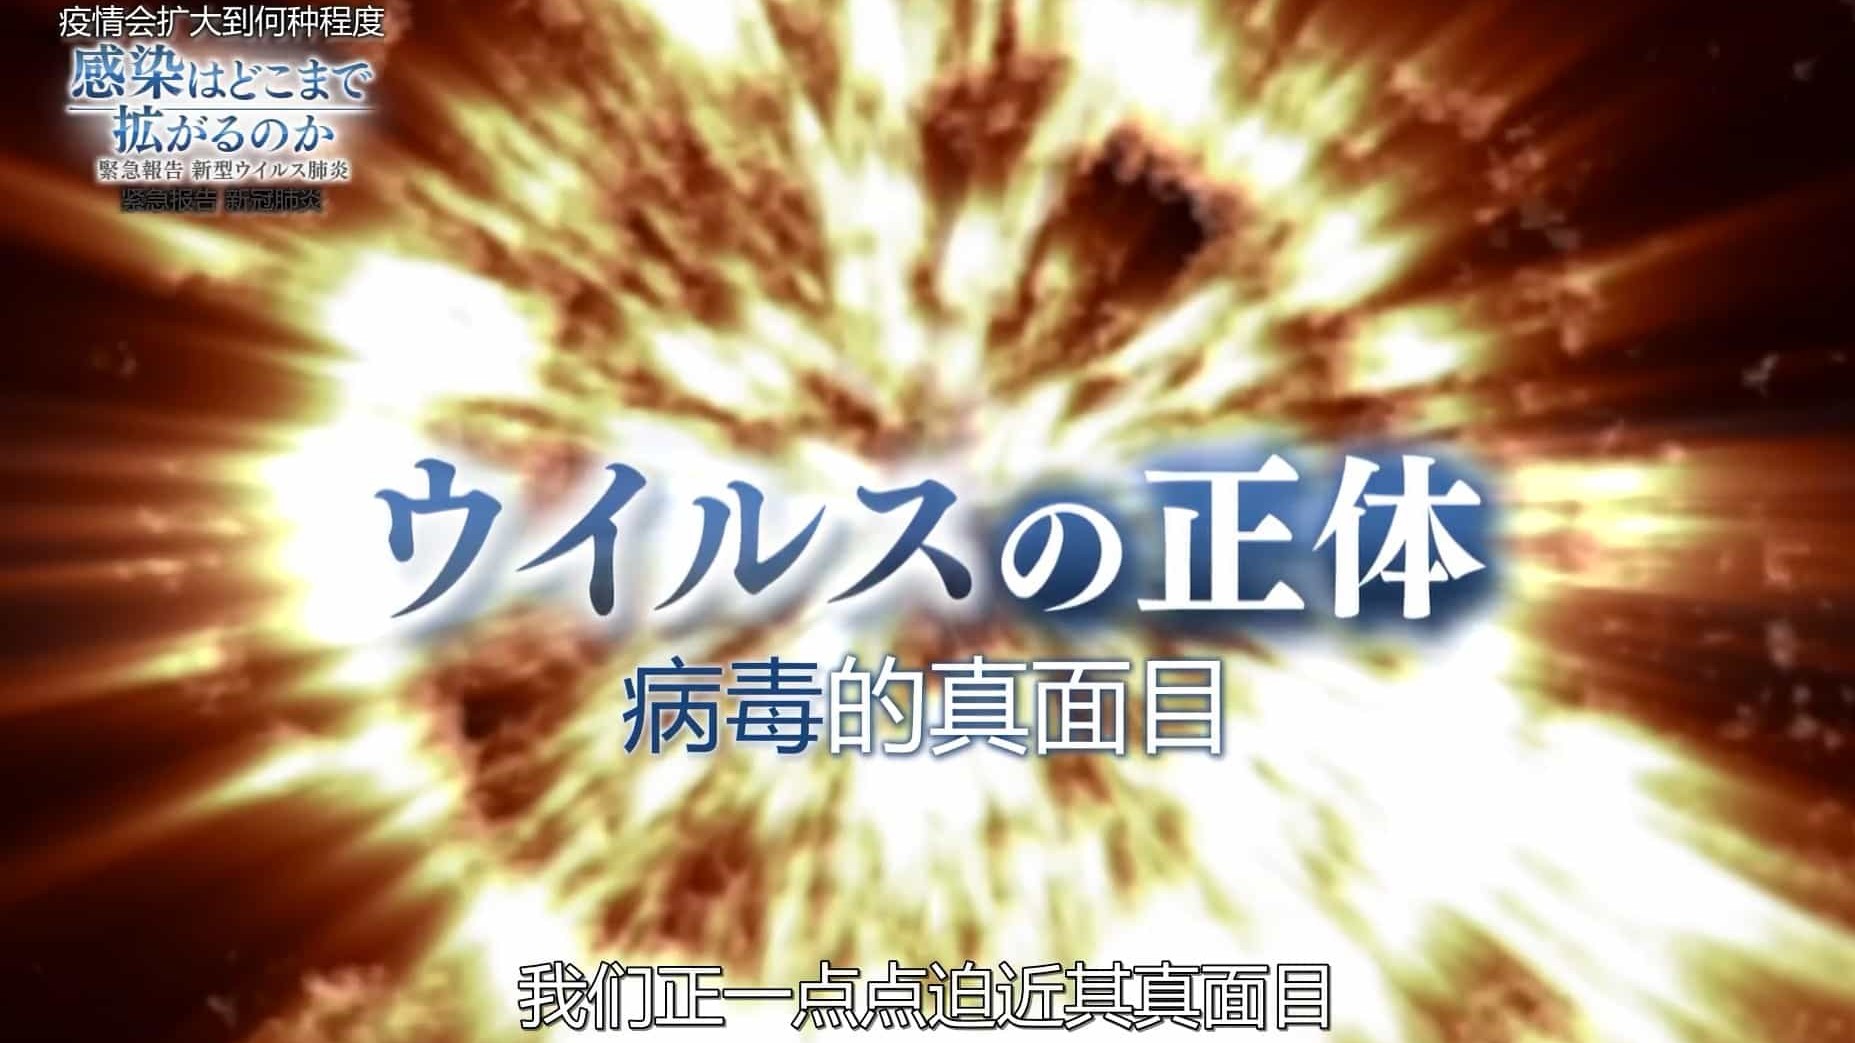 NHK纪录片《疫情会扩大到何种程度 紧急报告新冠肺炎 2020》全1集 日语中字 1080P高清下载